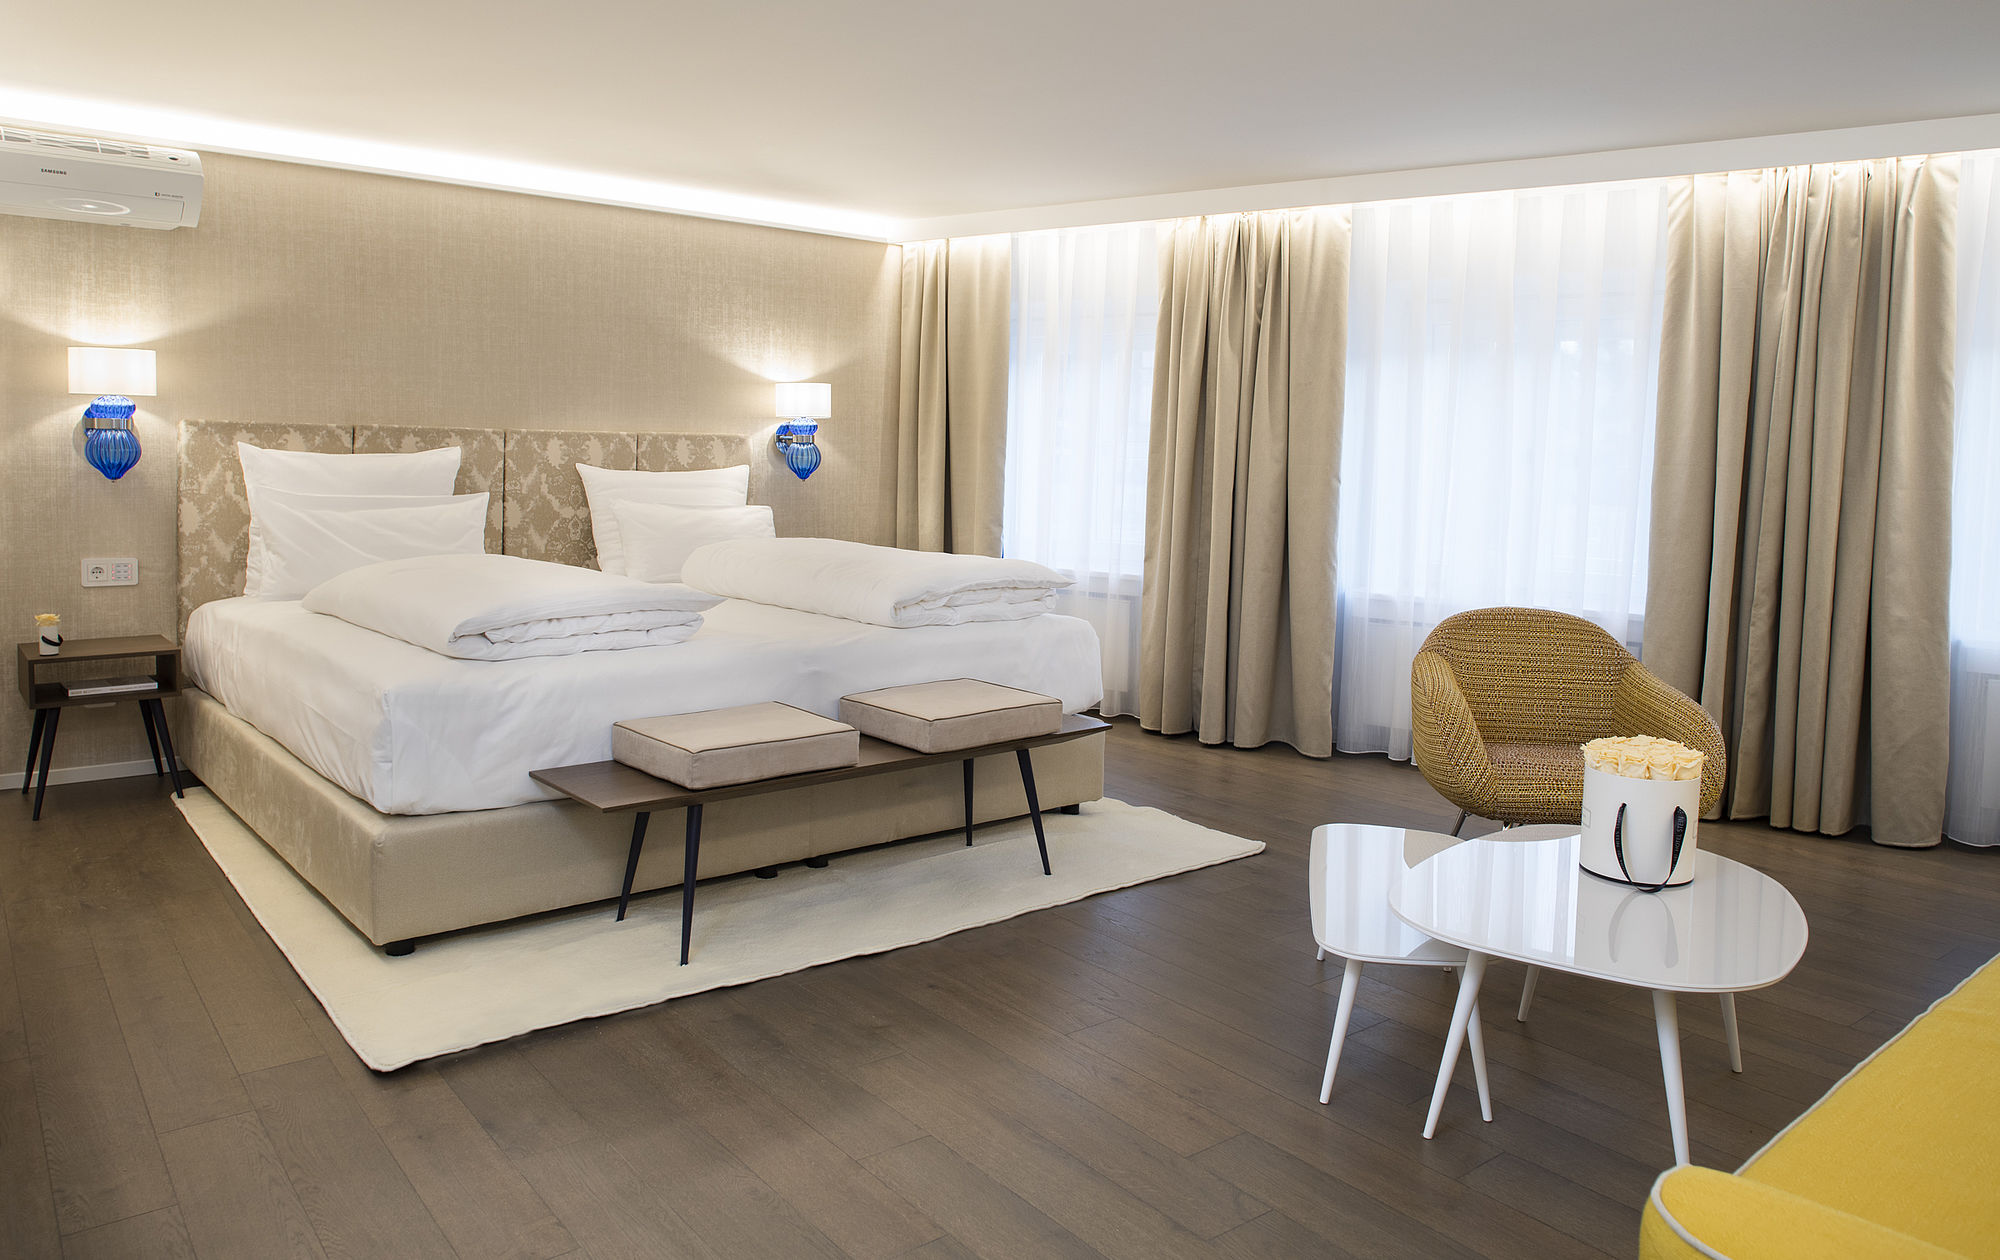 Das Schlafzimmer der Hotelsuite in hellem gold-beigem Design, großen Möbelstücken und viel Freifläche